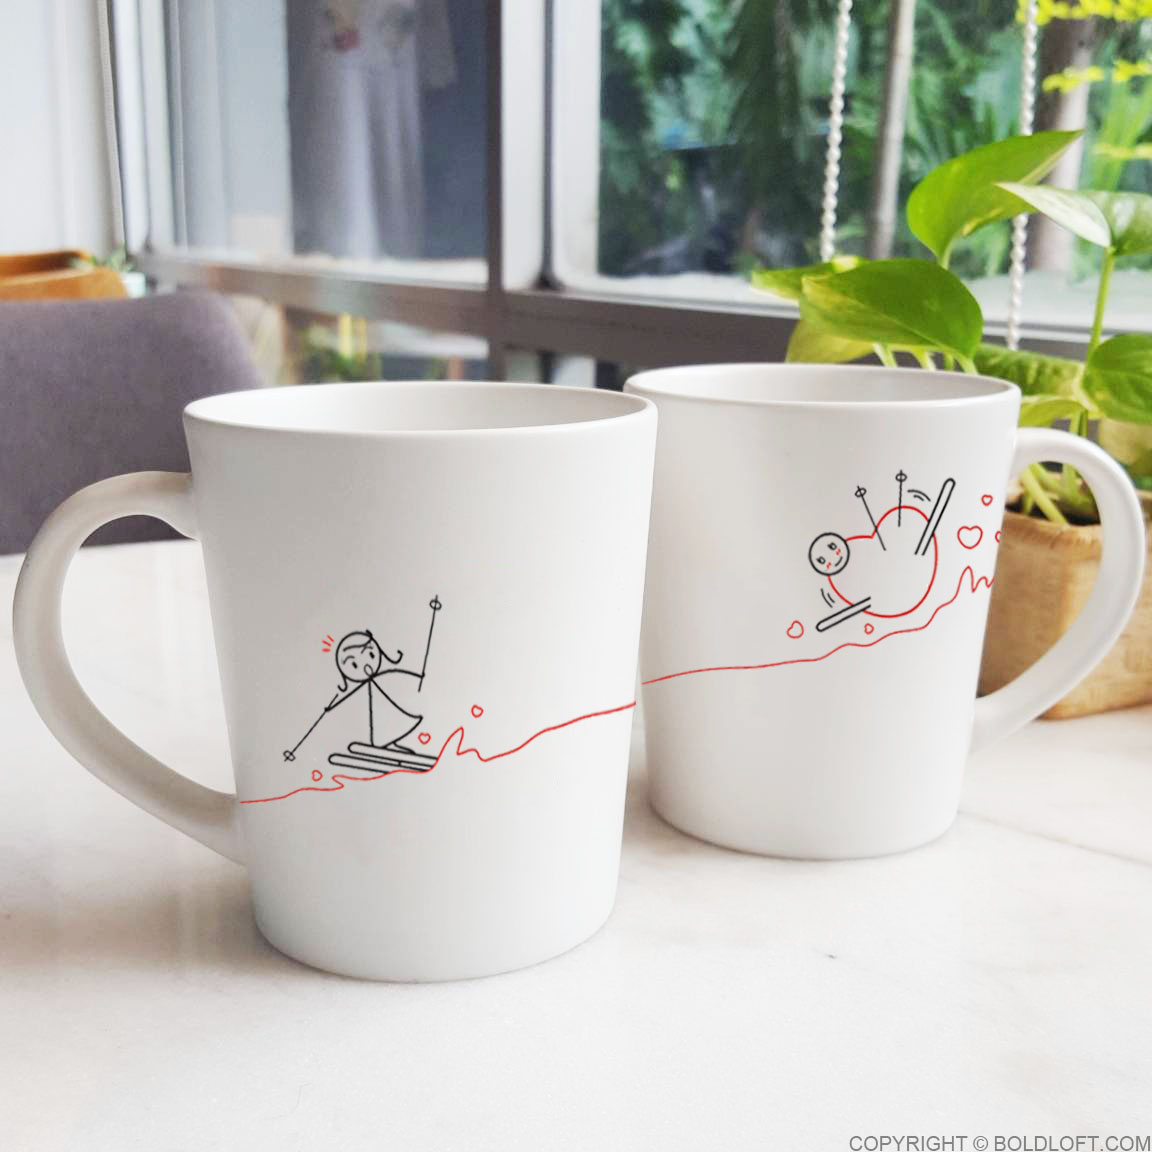 boldloft ski lover gifts ski lover mug couples coffee mugs